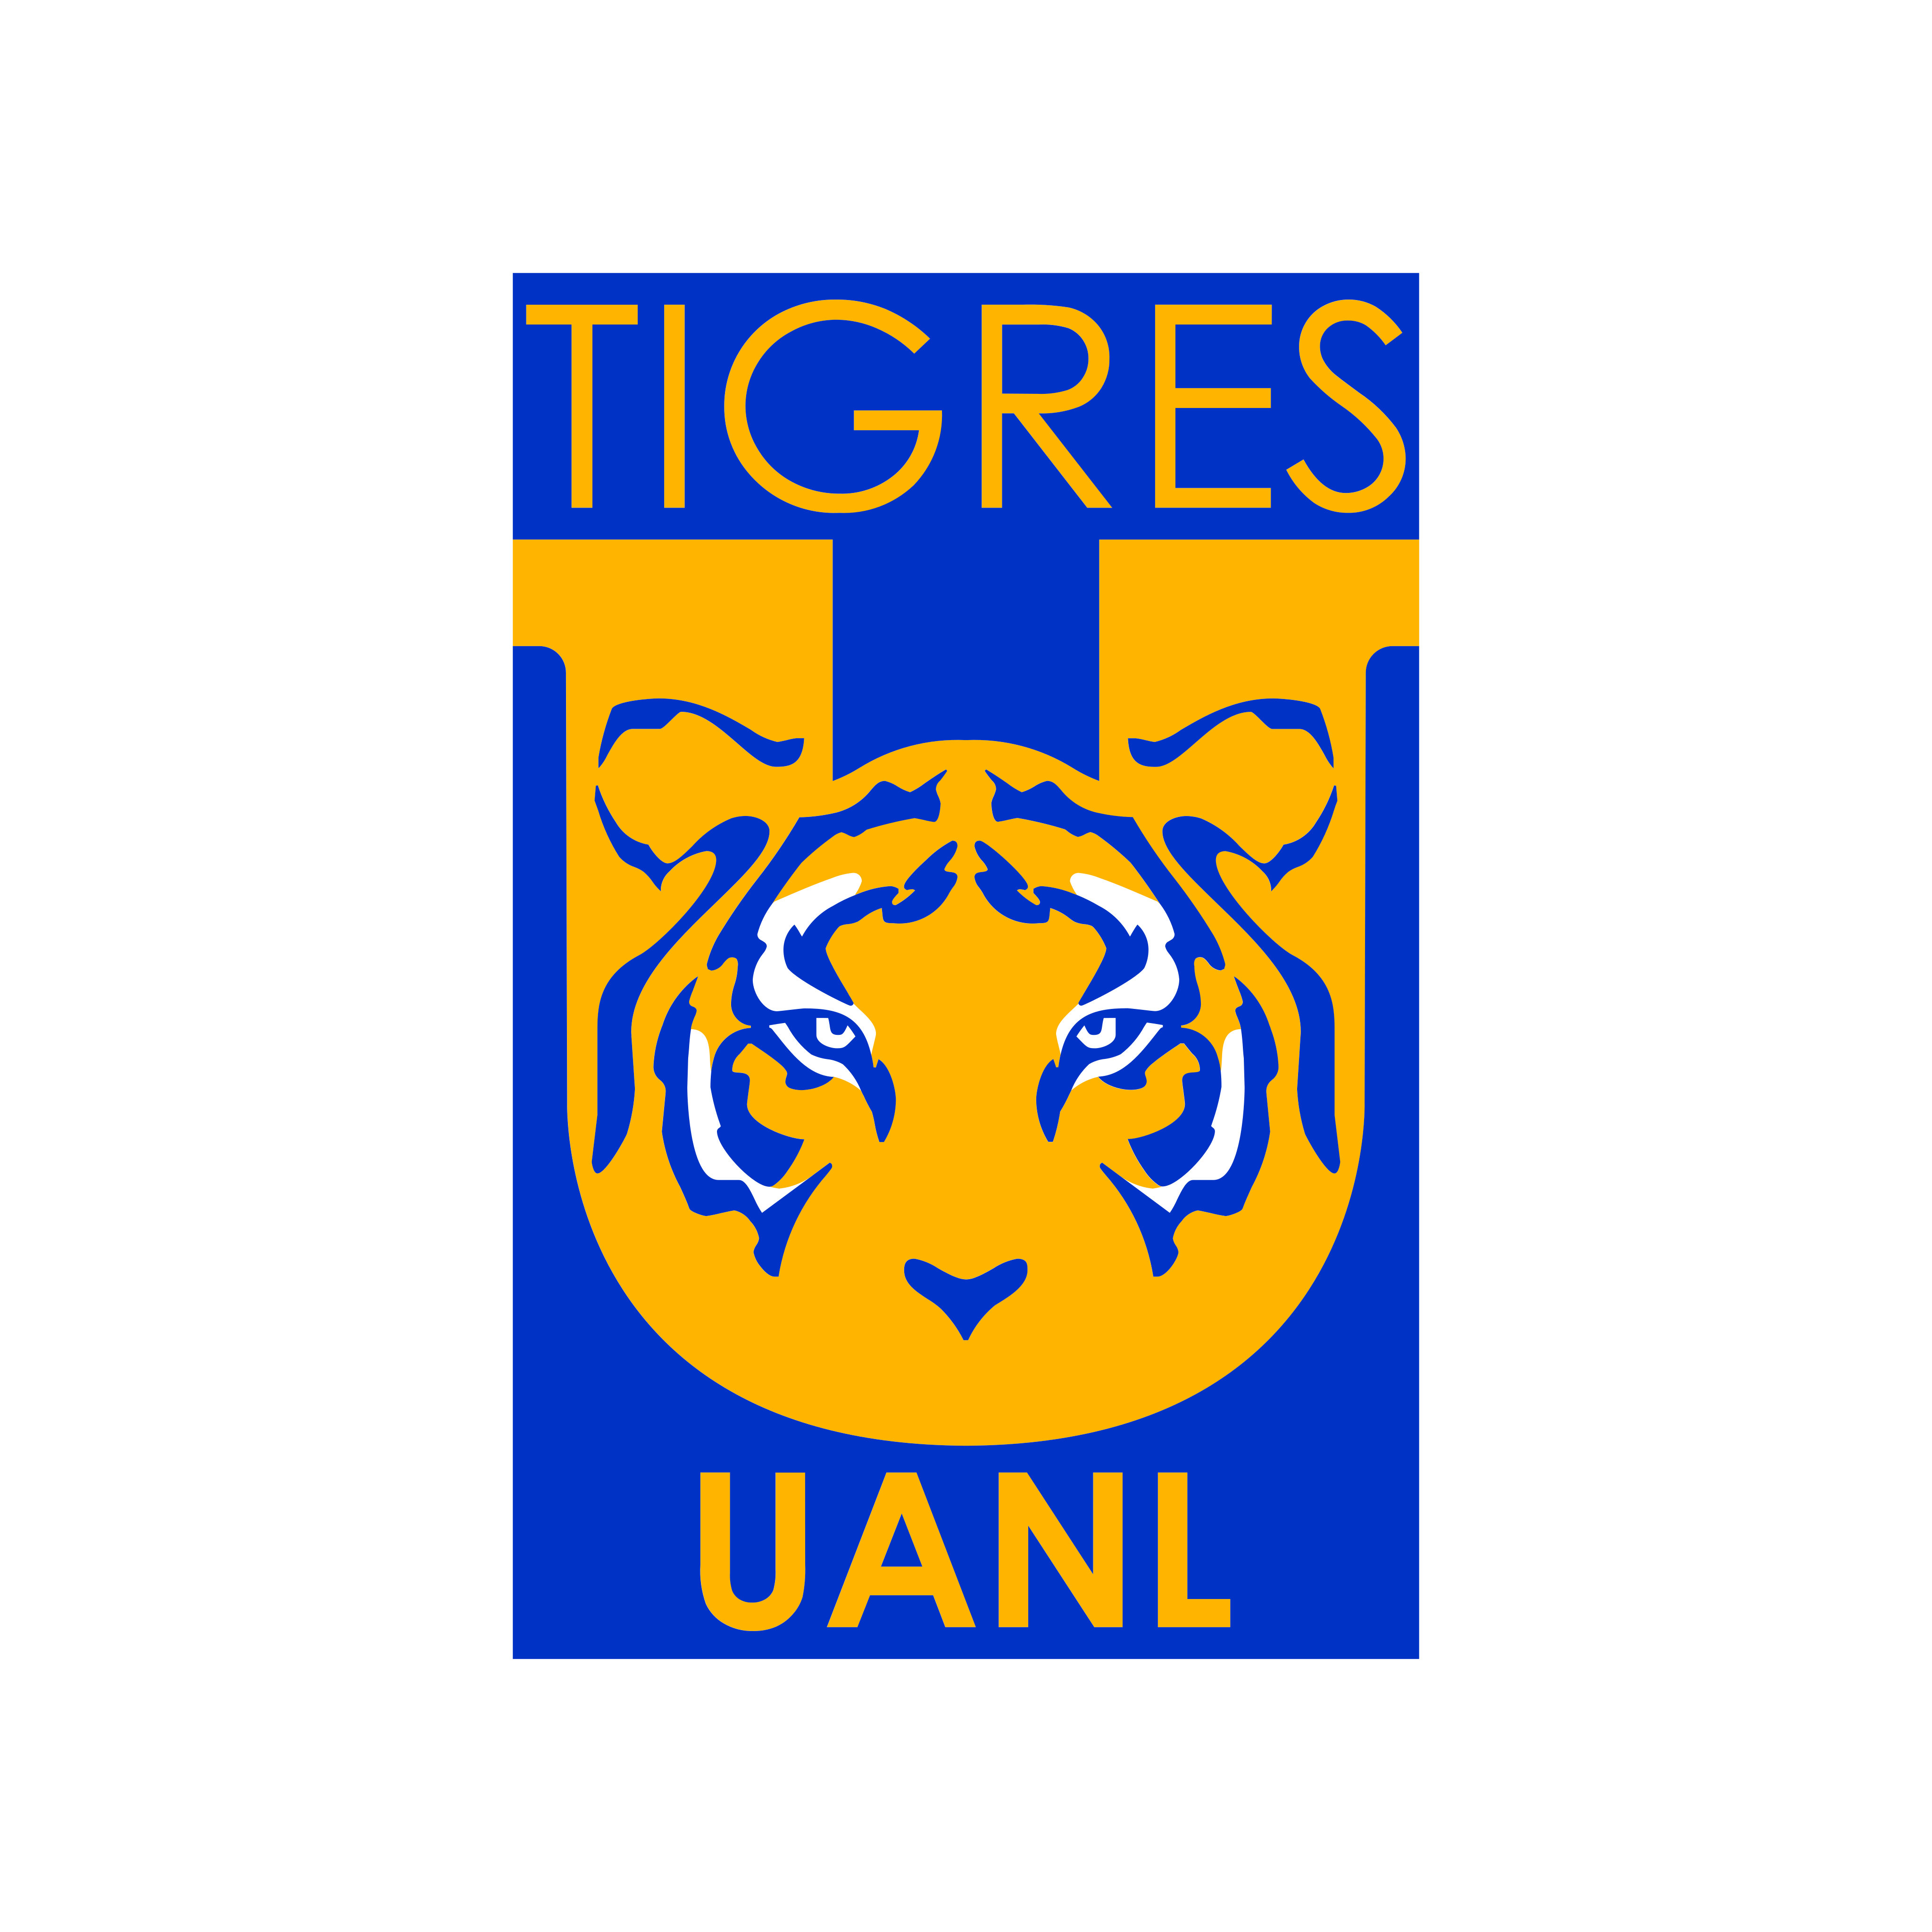 club tigres uanl logo 0 - Club Tigres UANL Logo